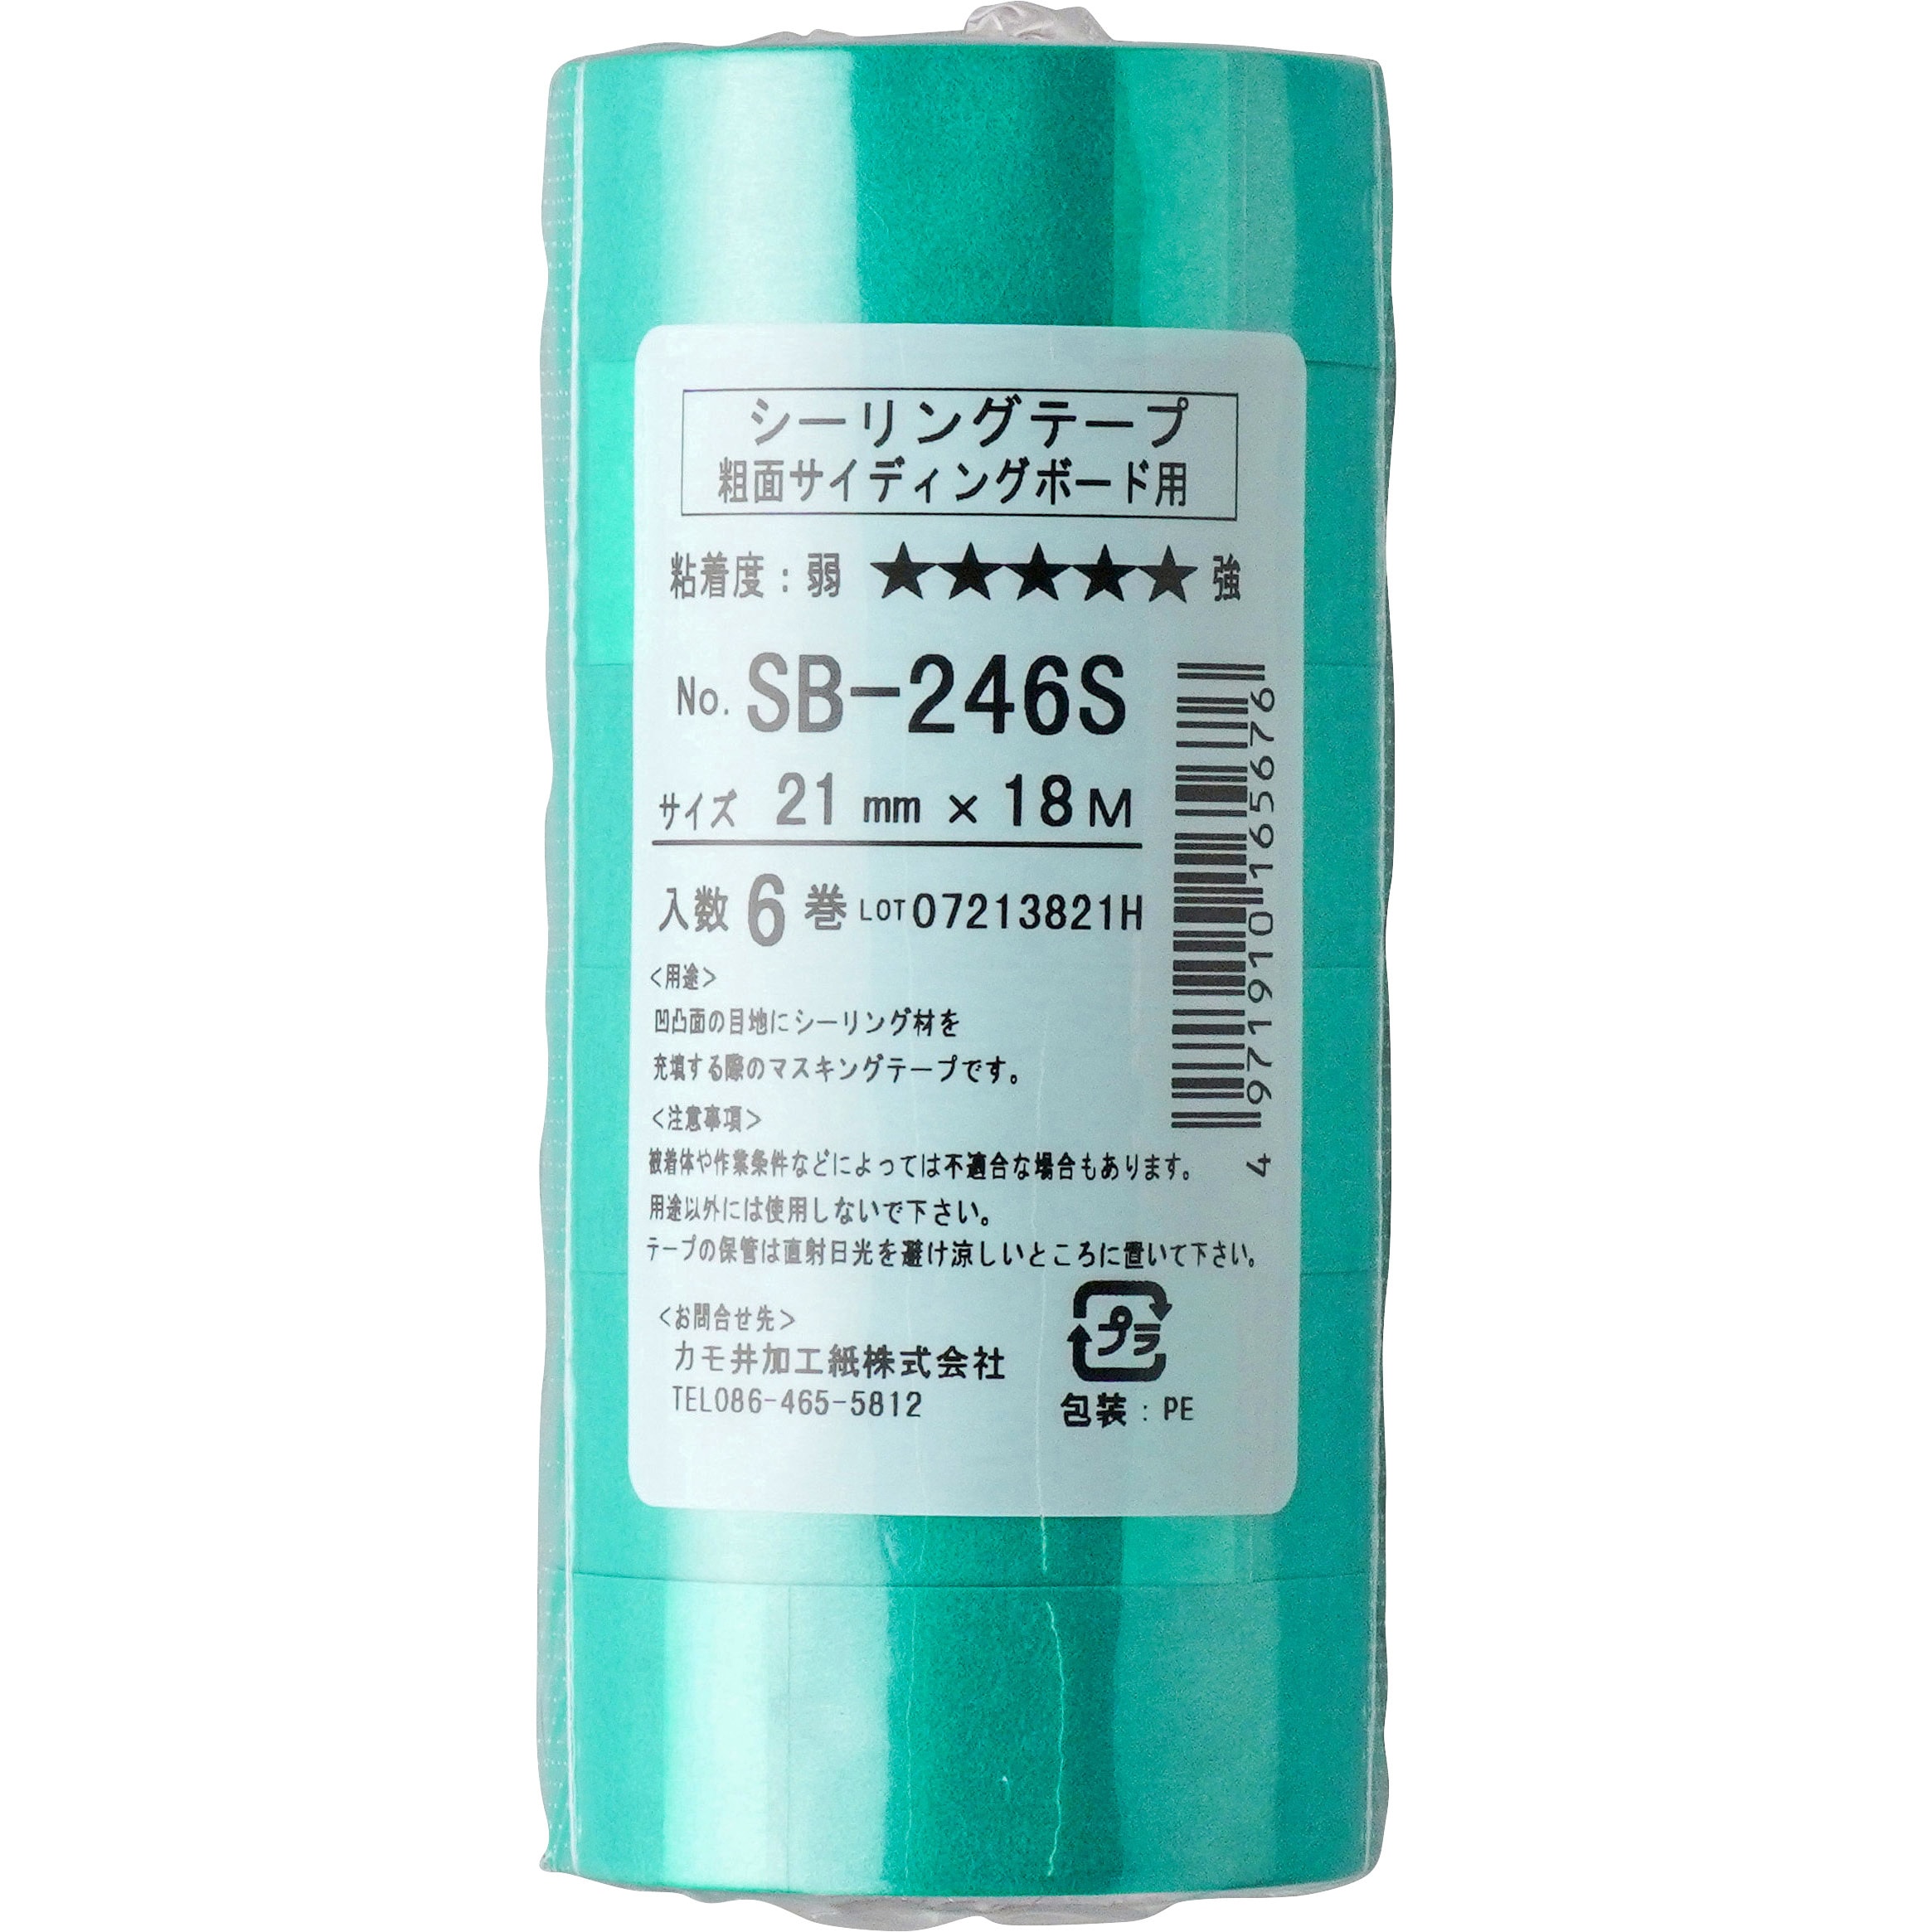 カモ井 超粗面養生用テープ『風神」 18ミリ×18M 70巻入 マスキングテープ - 1